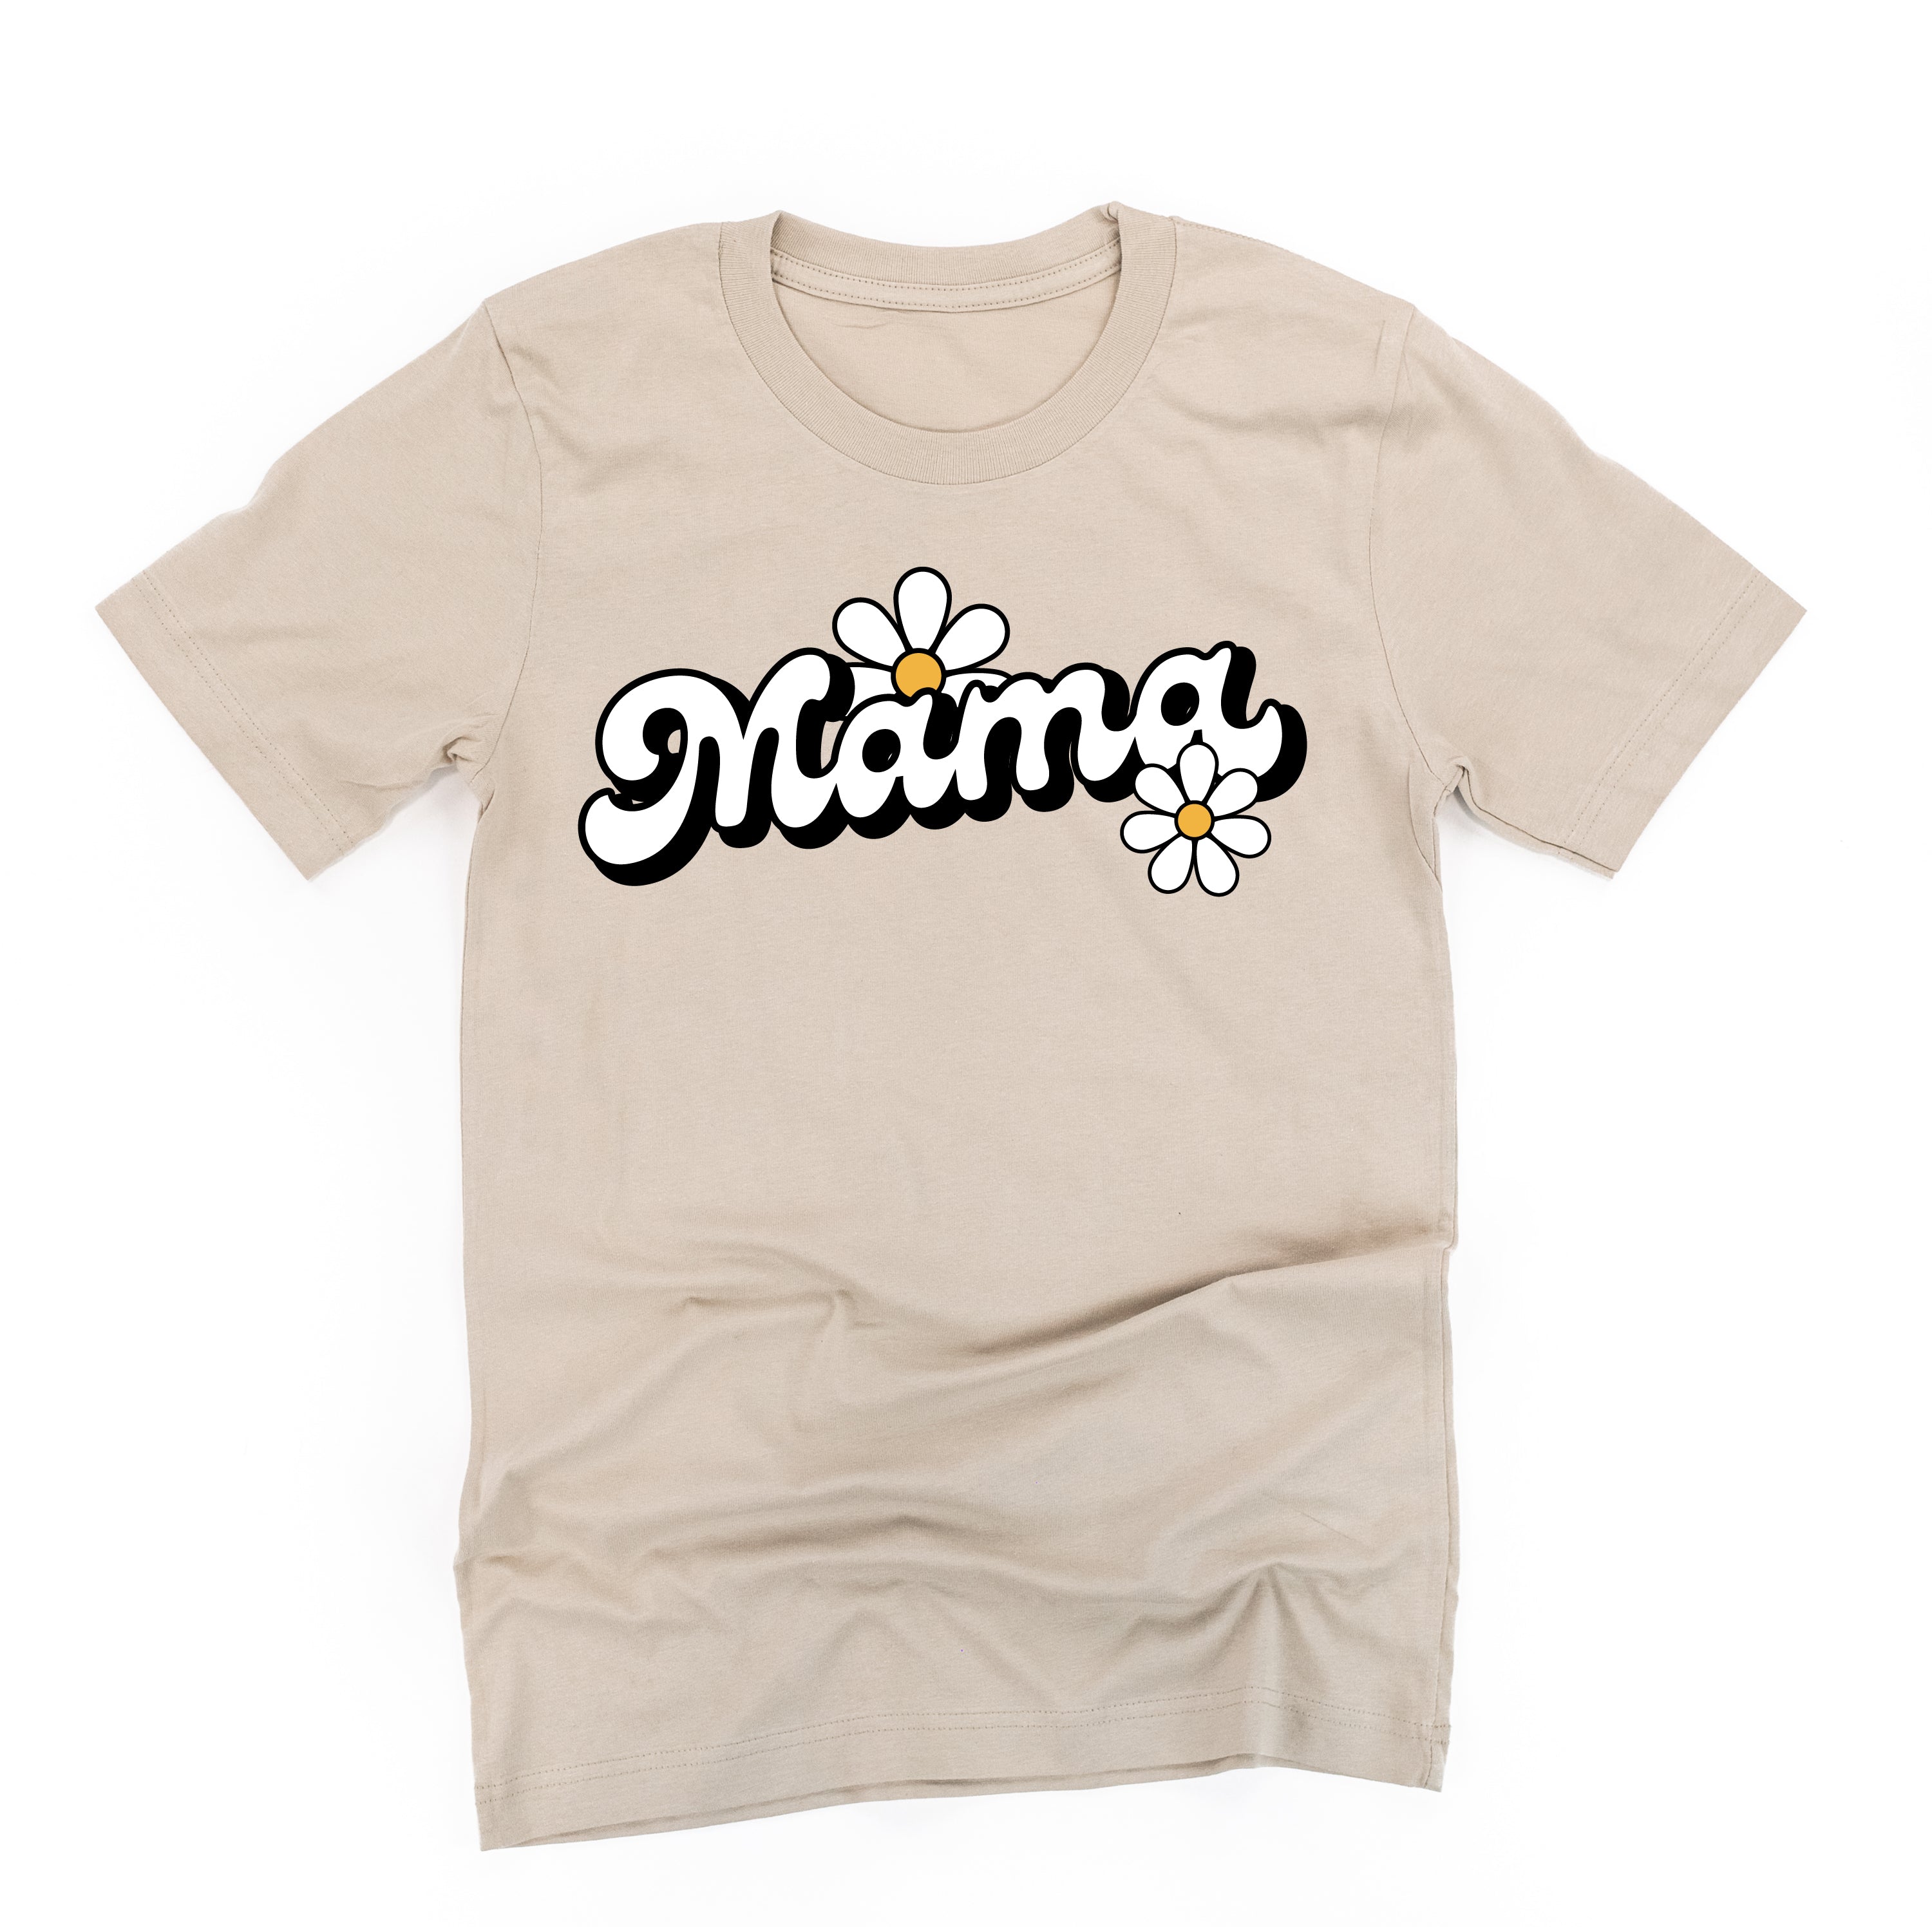 DAISY – Little Mama Shirt Shop LLC